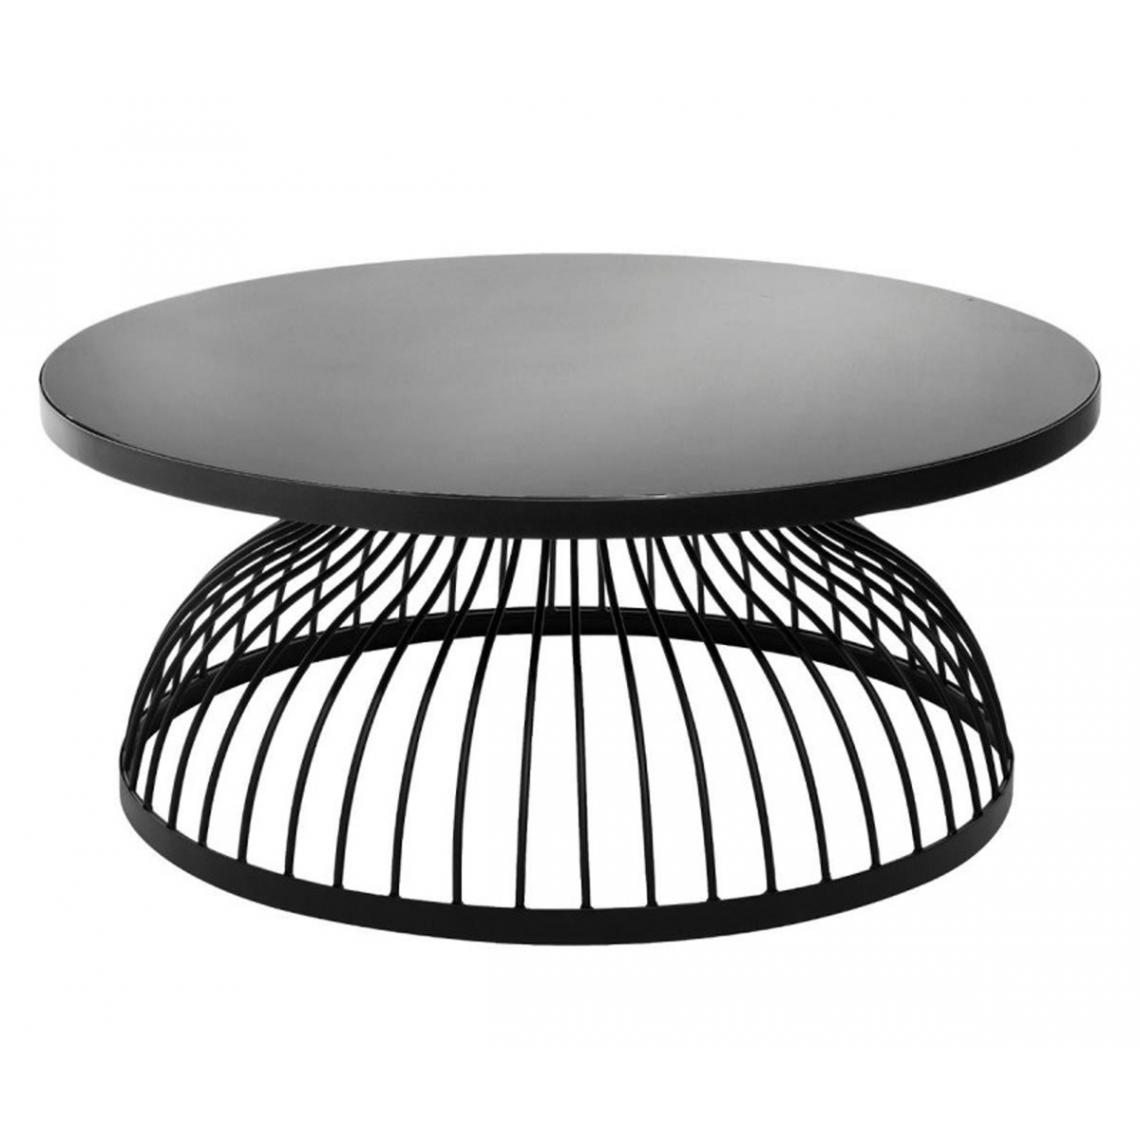 Pegane - Table basse en bois coloris noir en verre - D. 90 x H. 38 cm - Tables basses